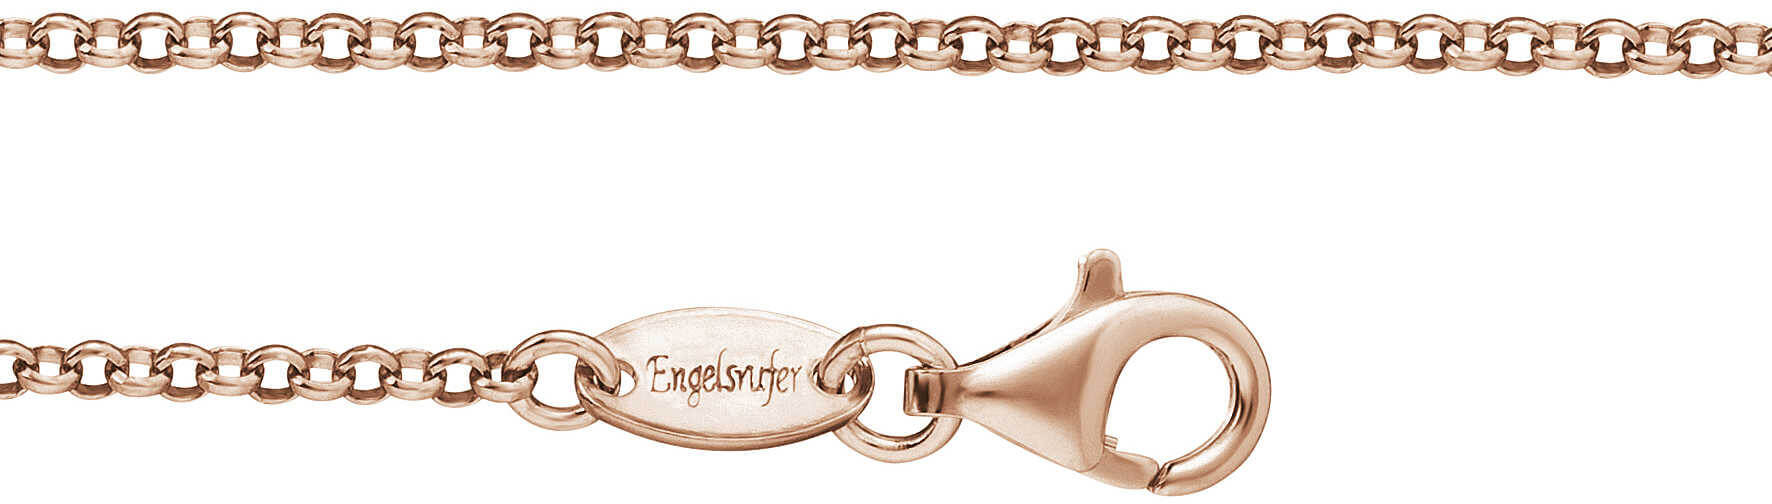 Engelsrufer Růžově zlacený stříbrný řetízek Rolo ERN-R 45 cm